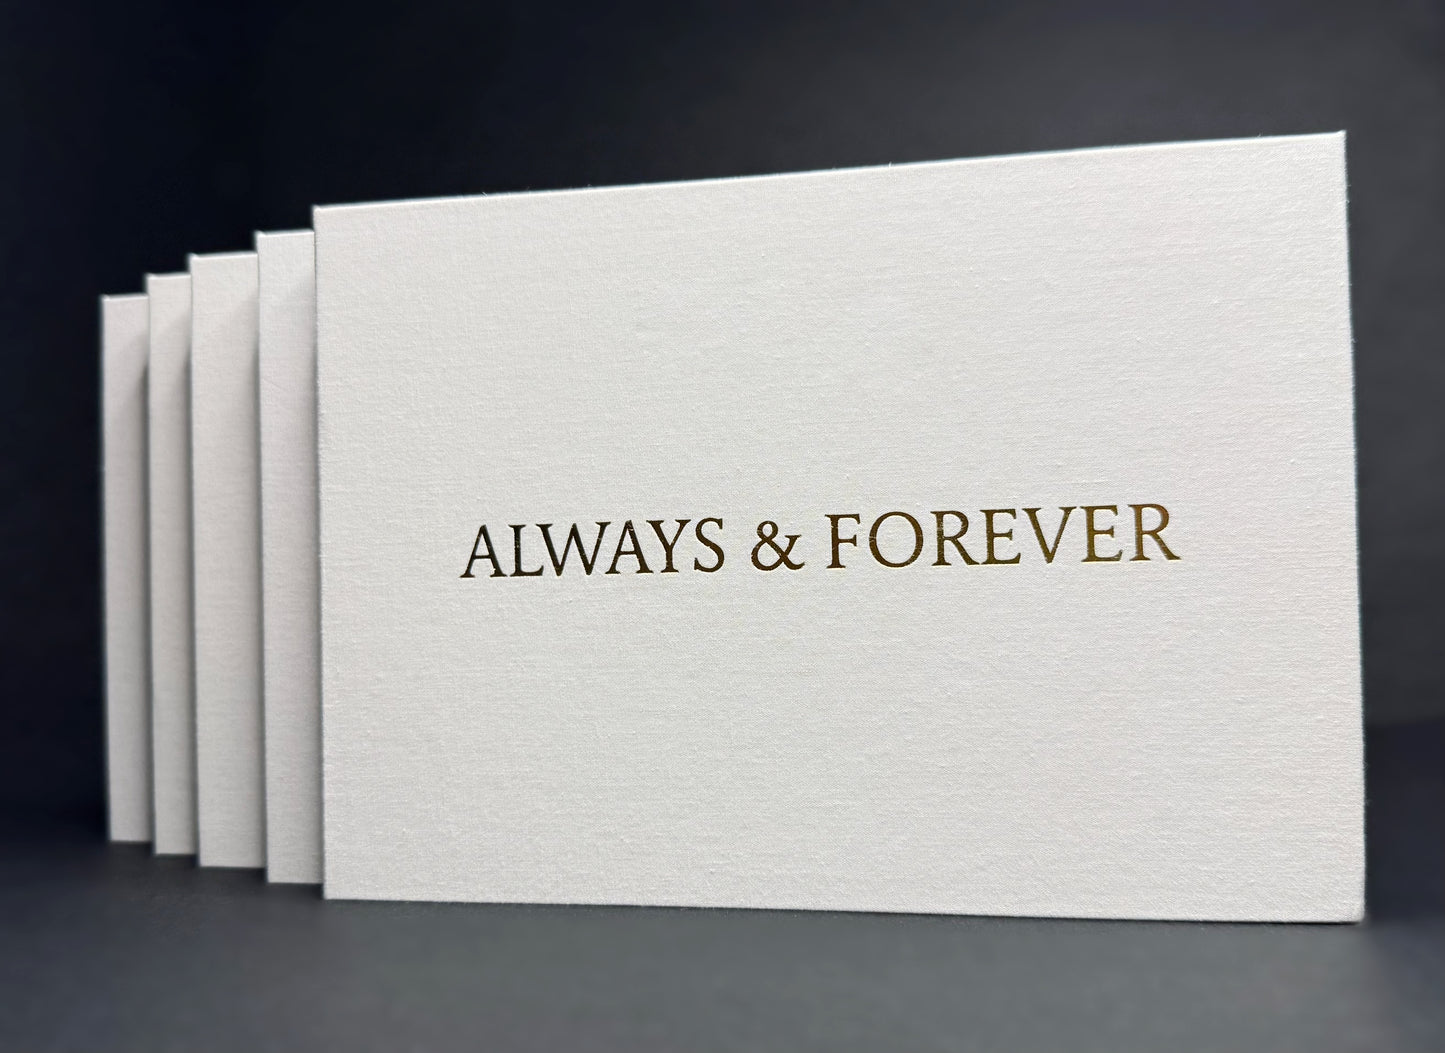 M.I.M Premium Video & Photo Book - "Always & Forever"